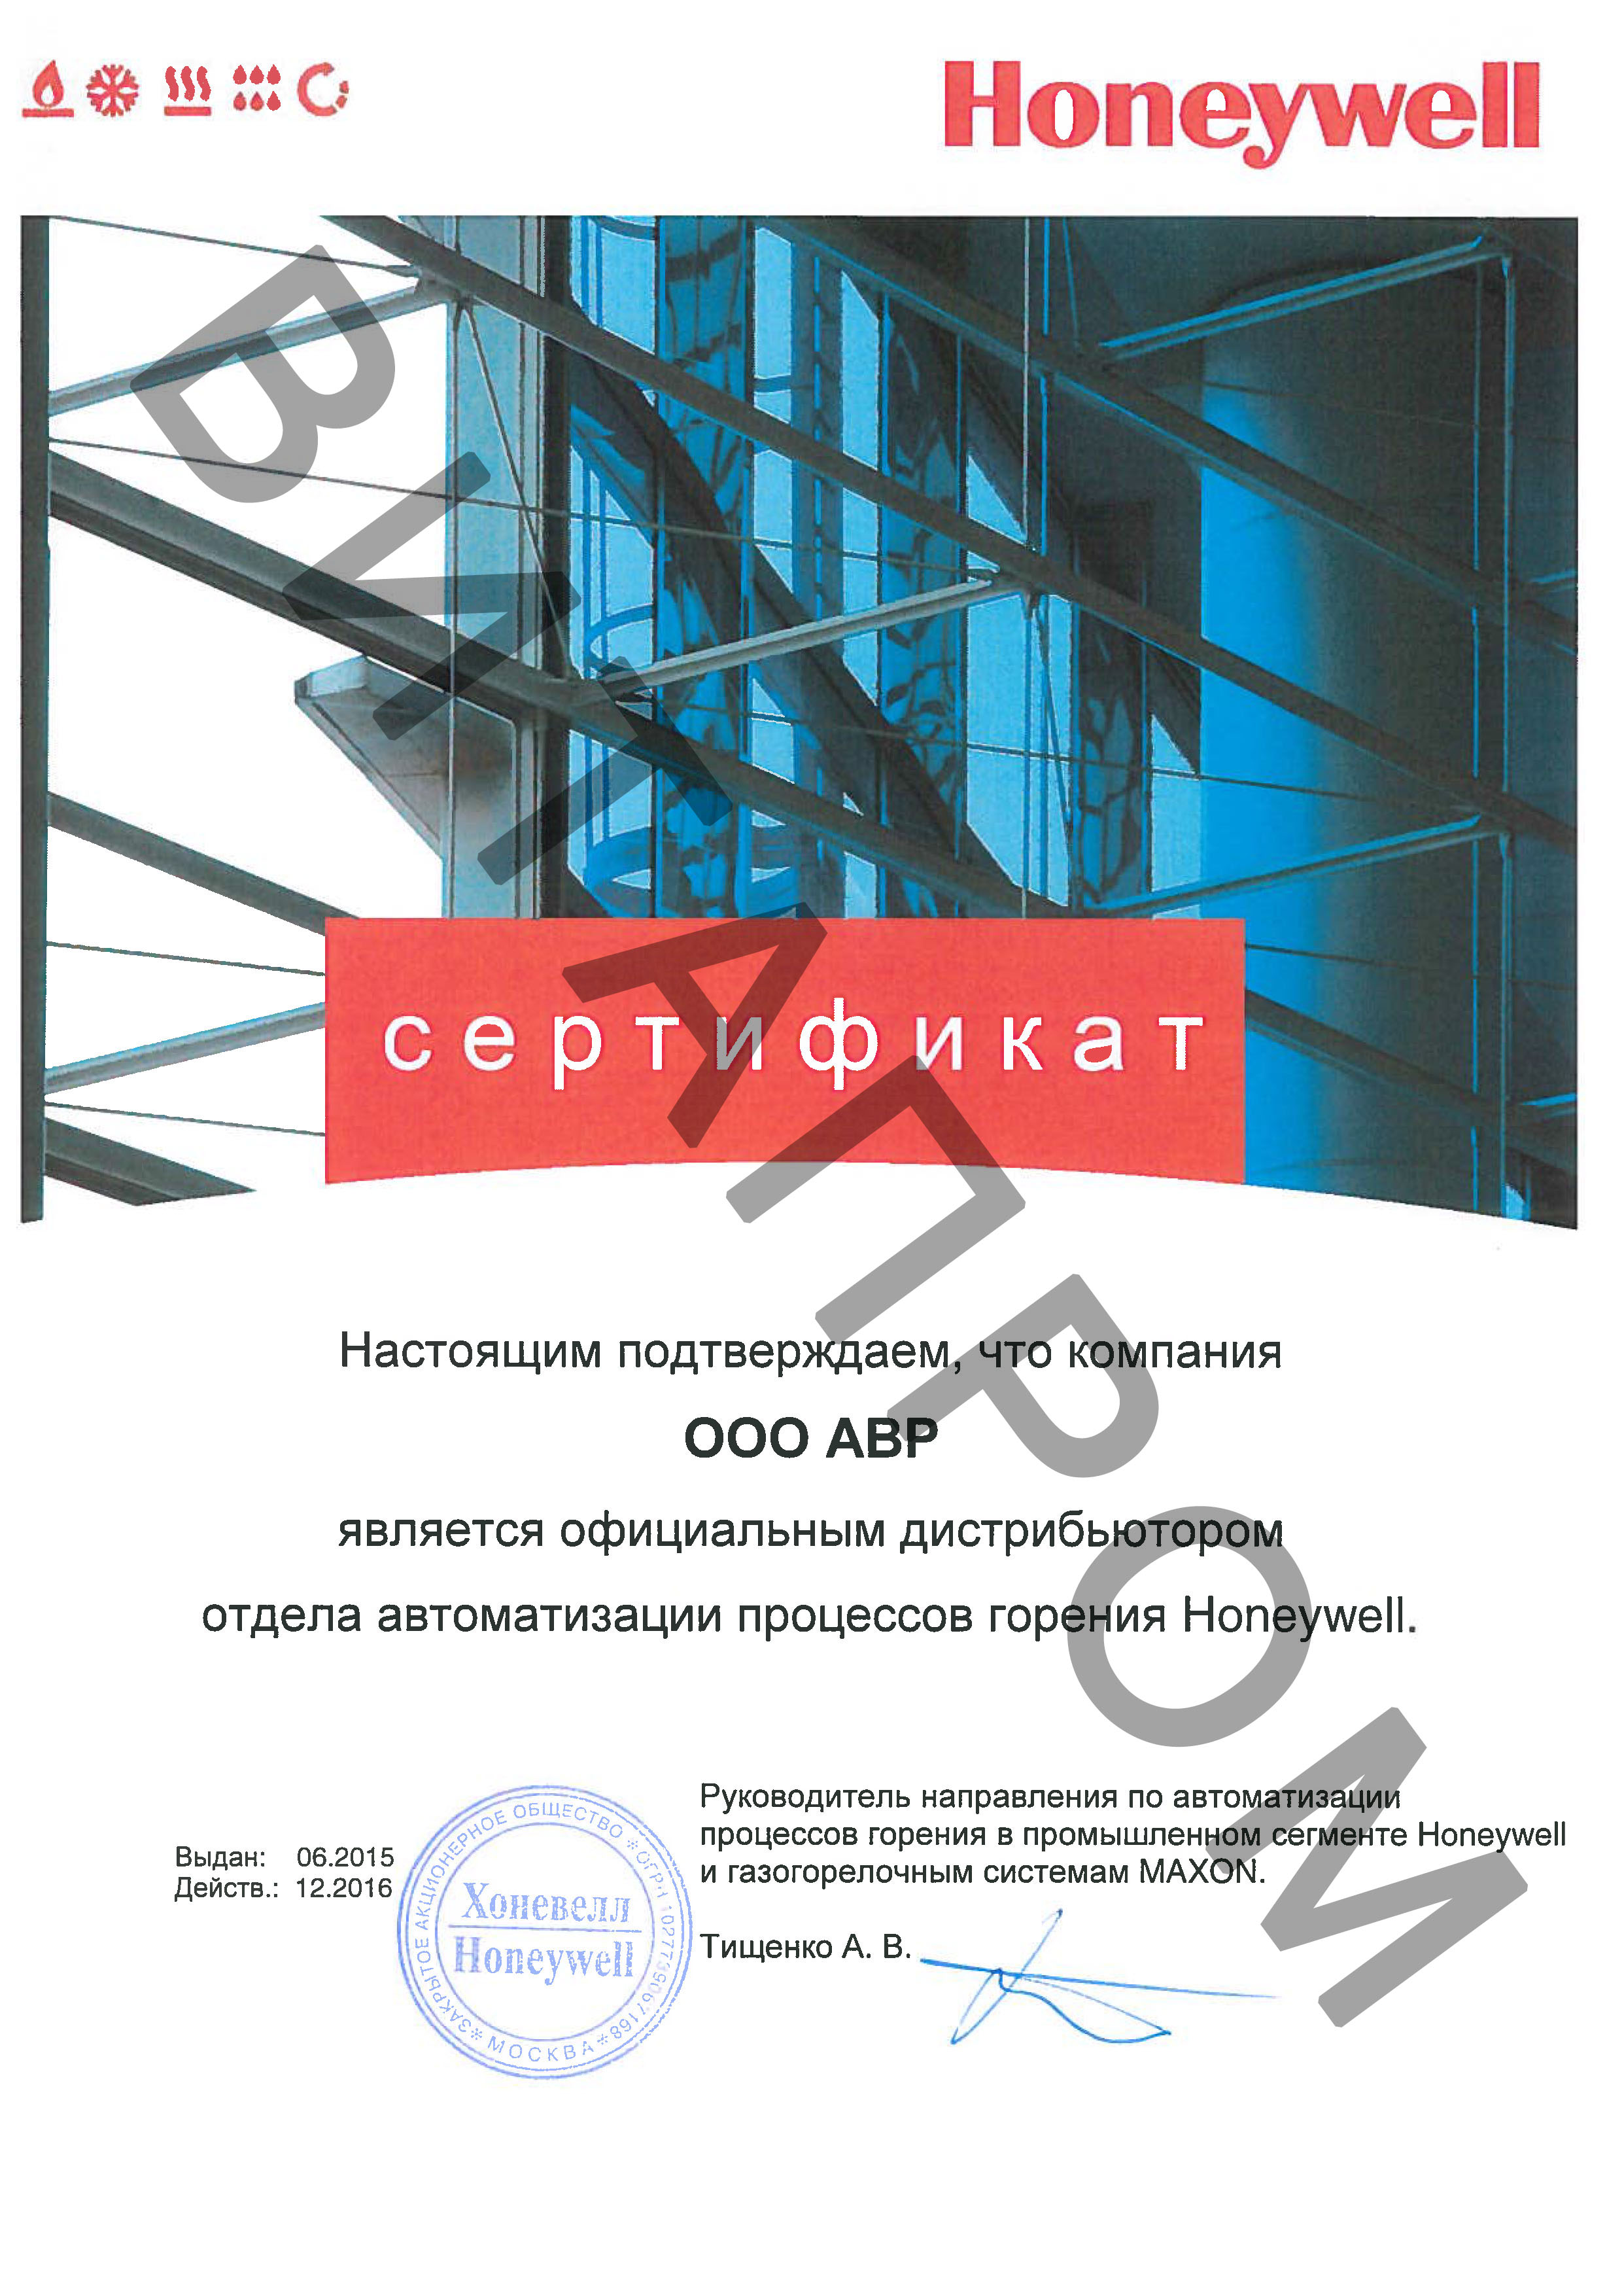 Сертификат дистрибьютора Honeywell 2016